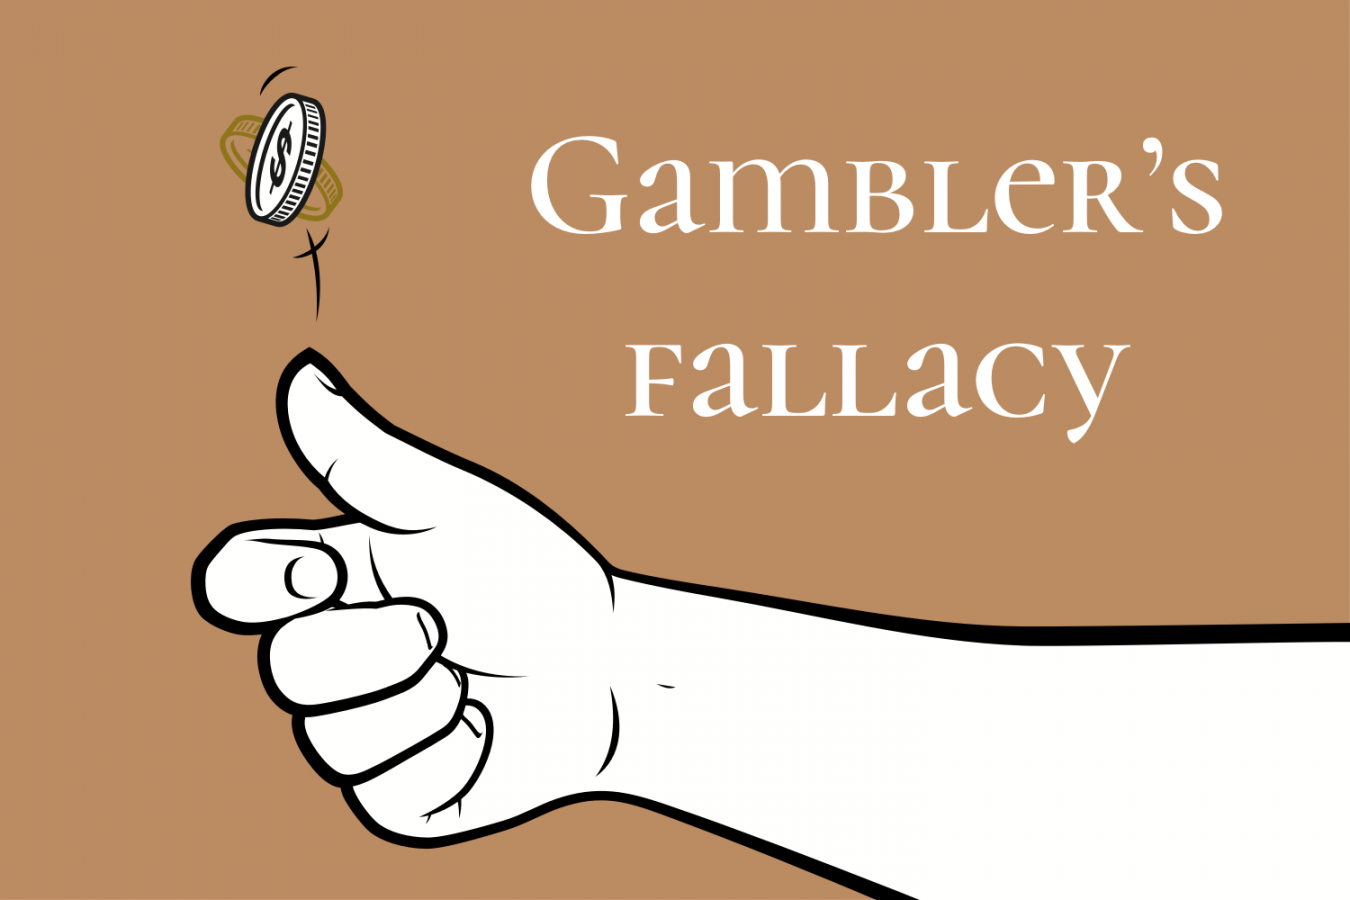 Nguy-bien-con-bac-Gambler-fallacy-trong-trading-TraderTop1.png